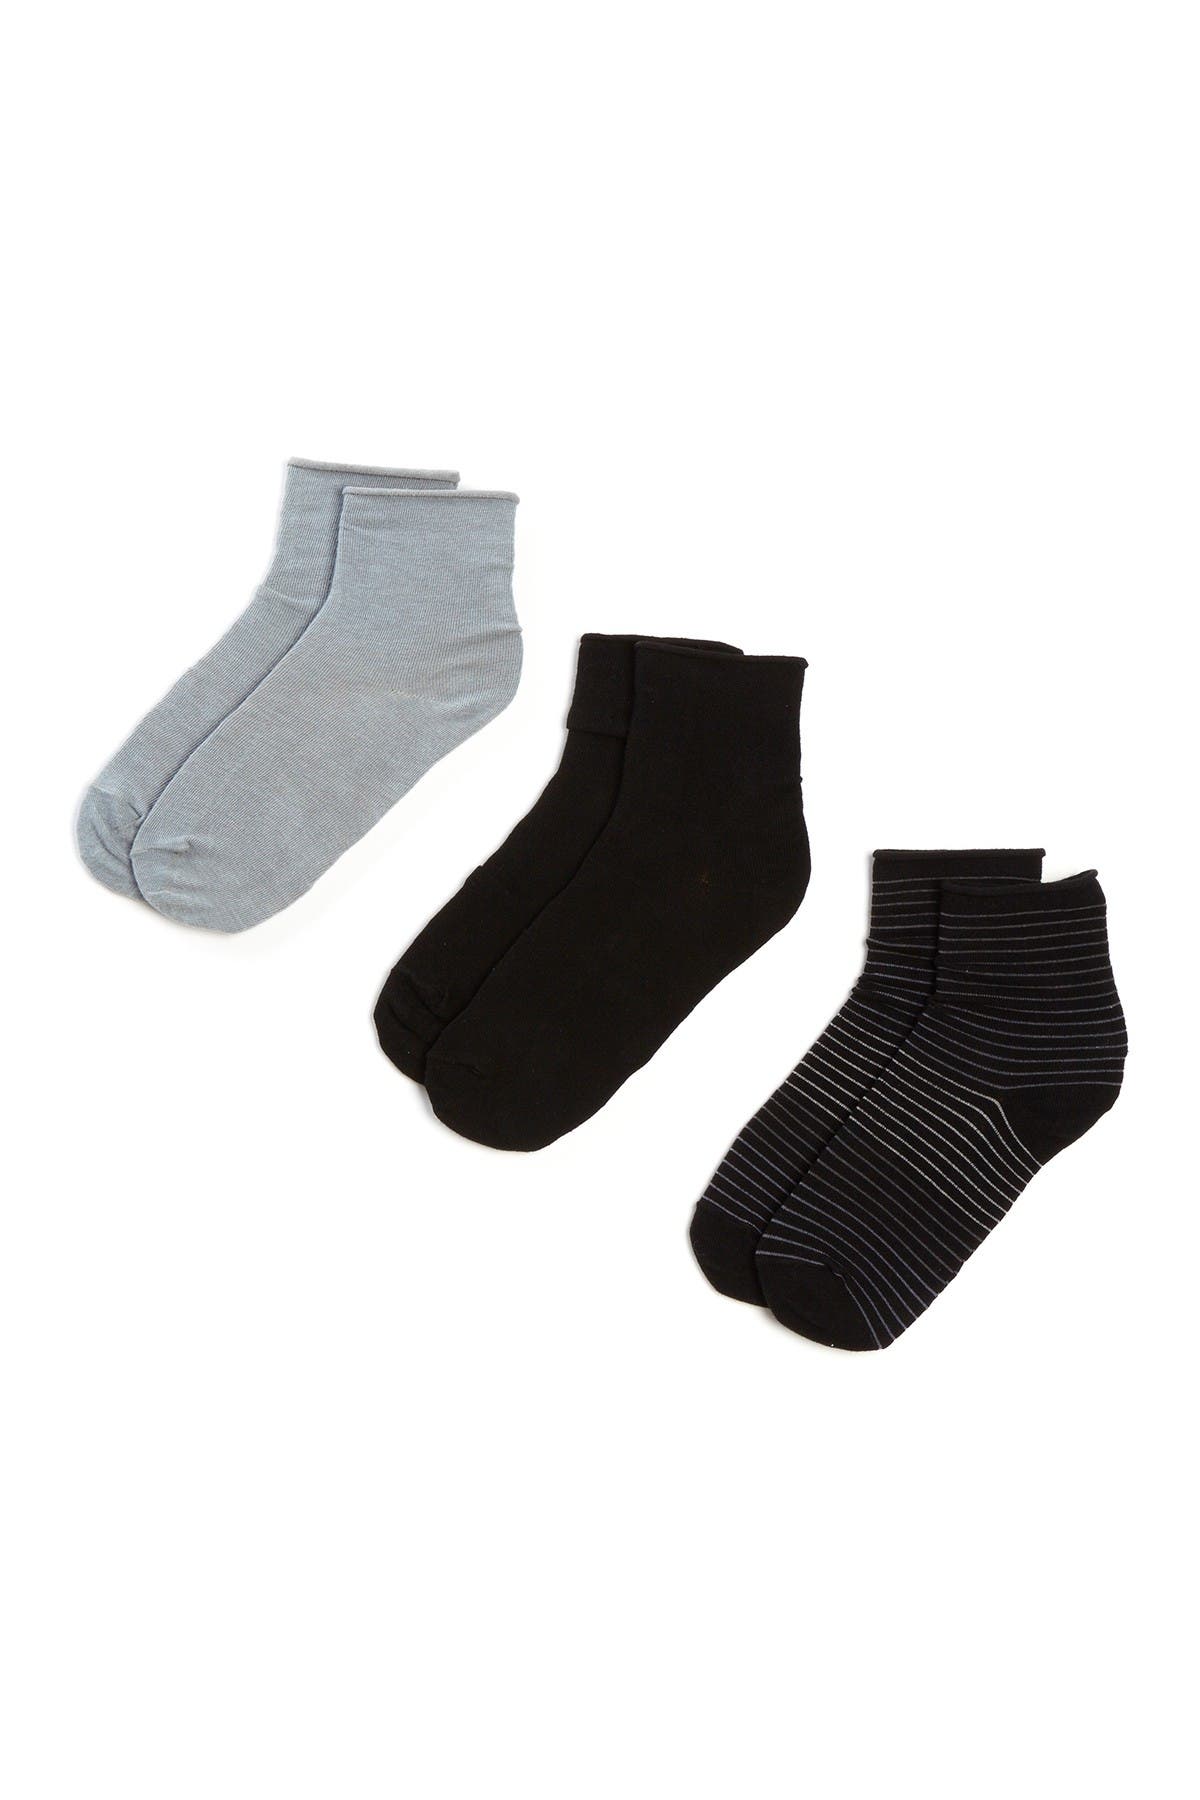 HUE | Roll Top Shortie Socks - Pack of 3 | Nordstrom Rack